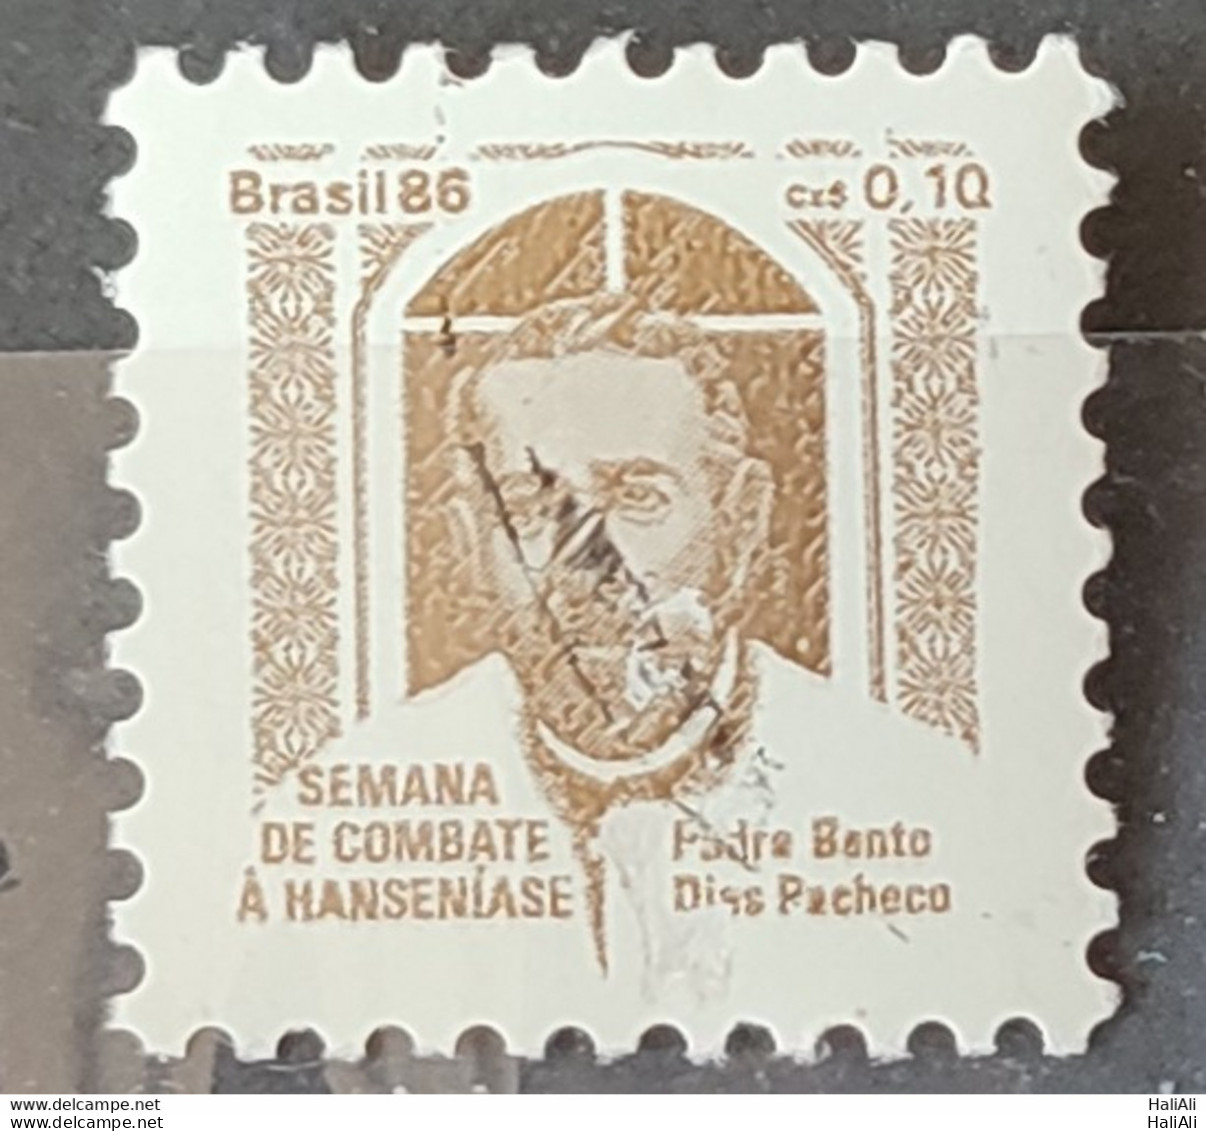 C 1538 Brazil Stamp Combat Against Hansen Hanseniasse Health Father Bento Religion 1986 H23 Circulated 1.jpg - Gebraucht